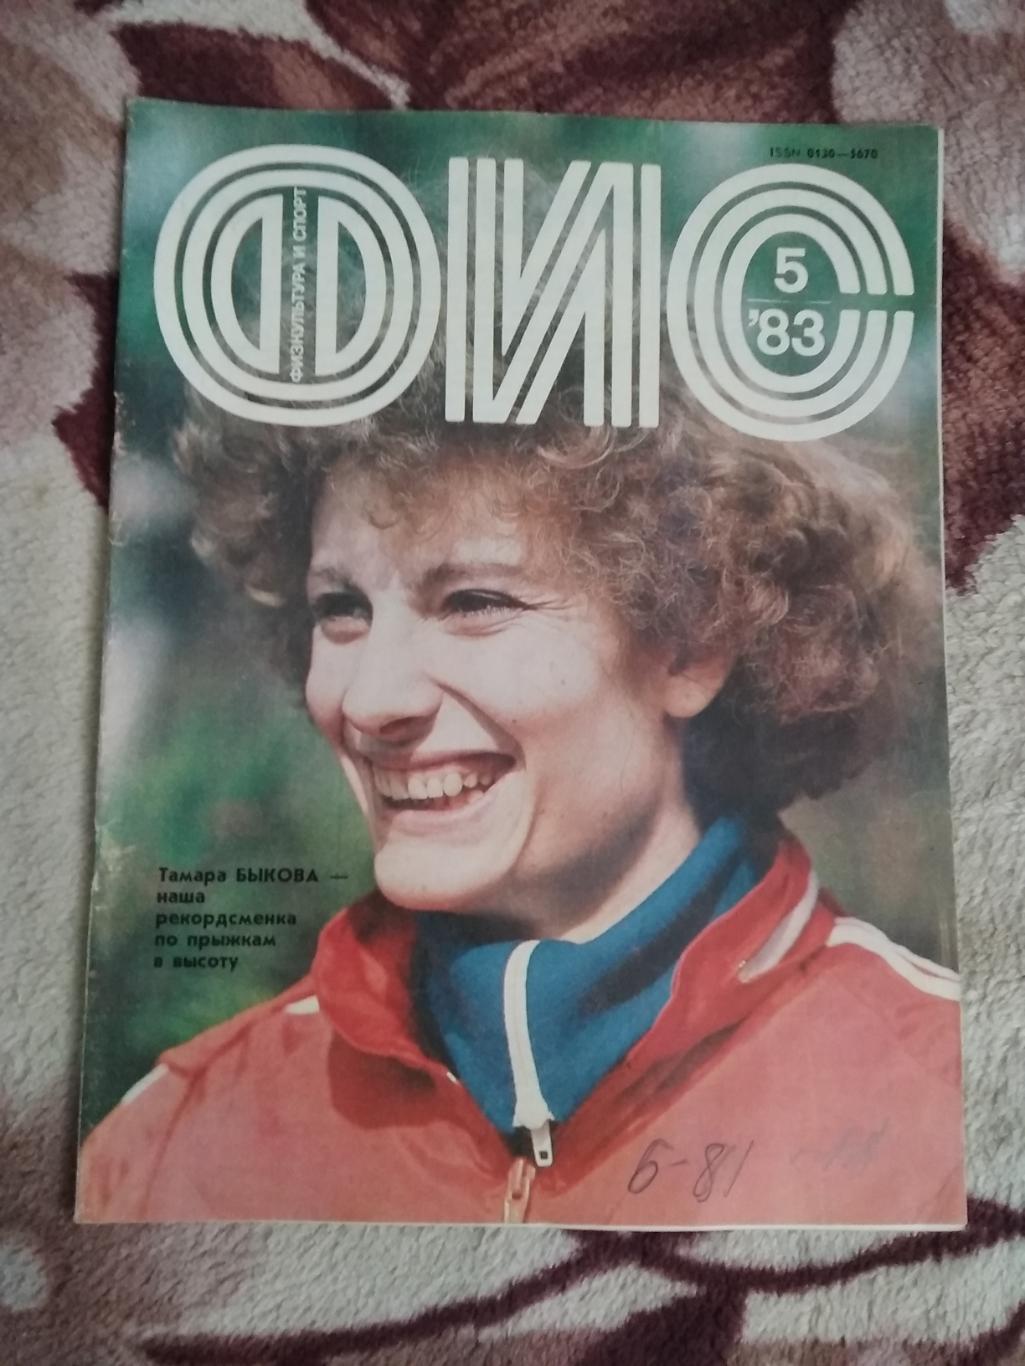 Журнал.Физкультура и спорт № 5 1983 г. (ФиС).